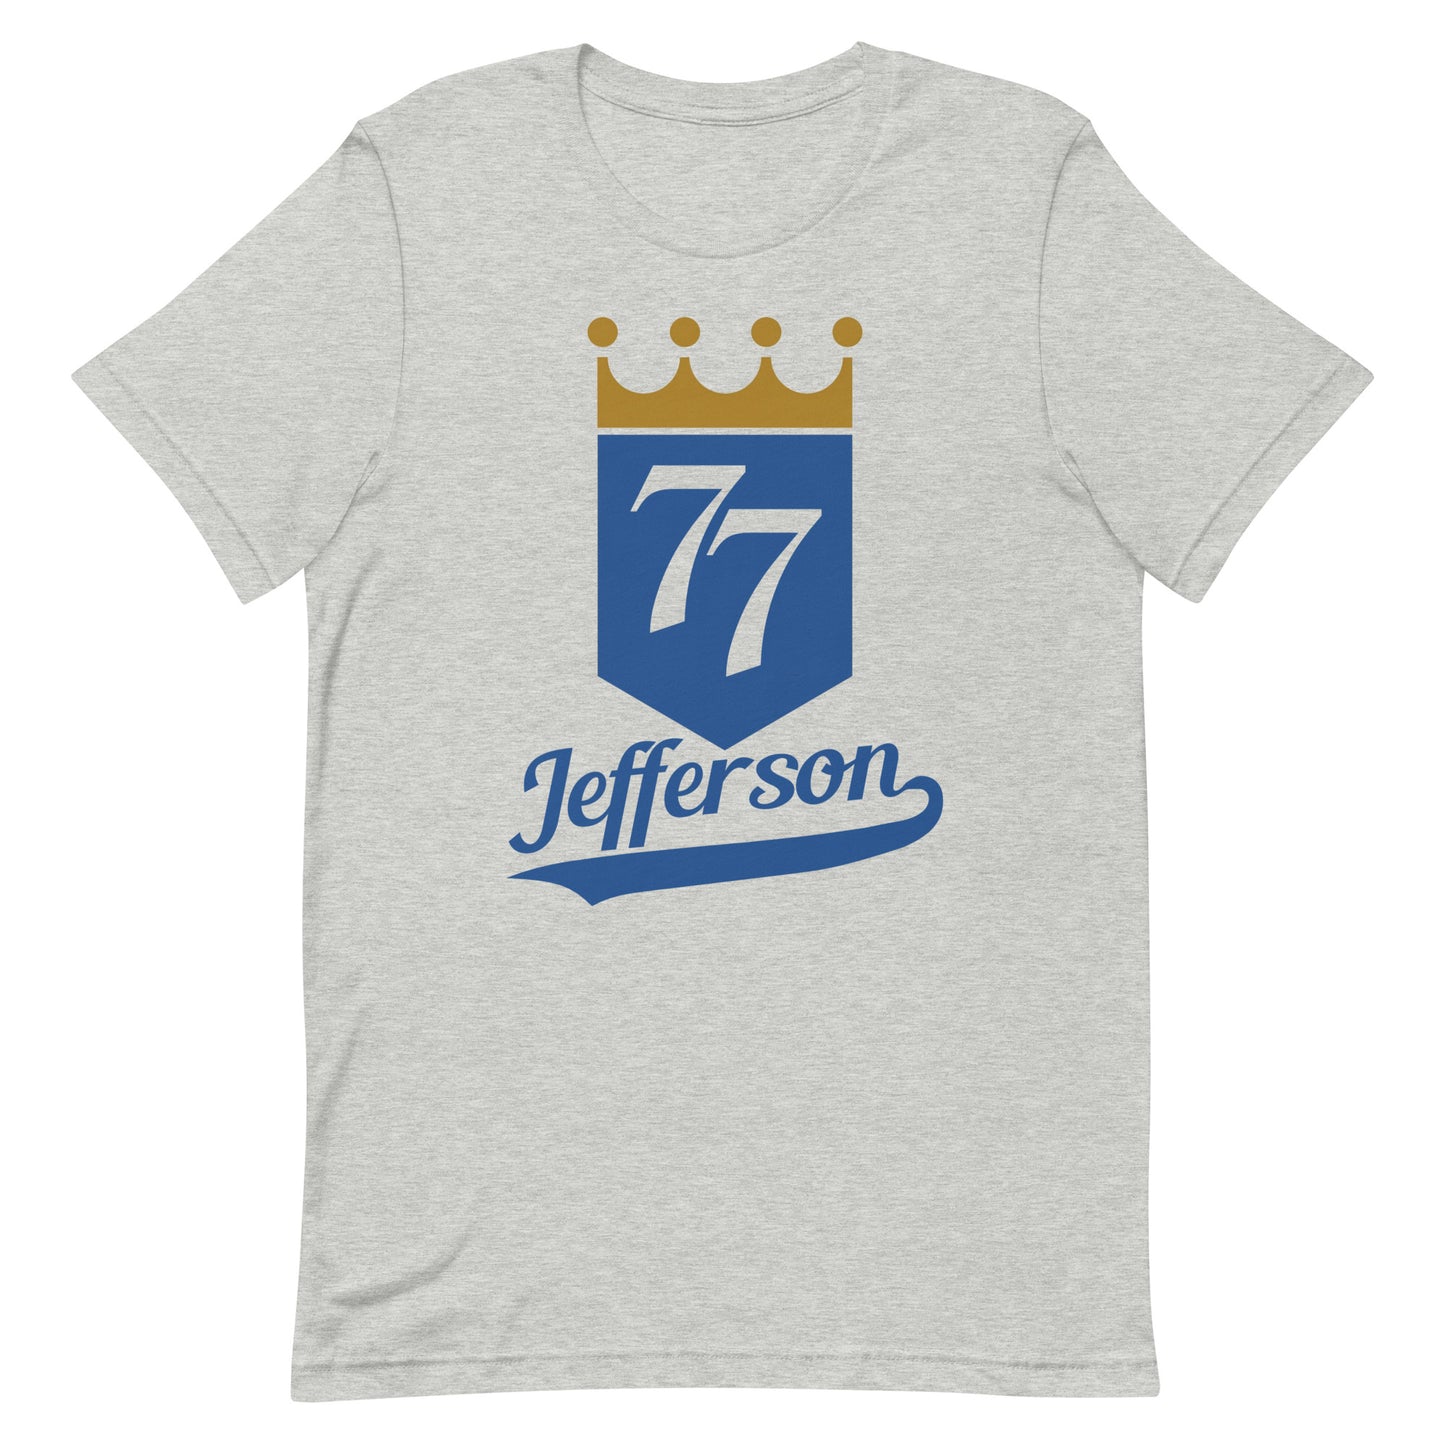 Royal - 77J - Unisex T-shirt